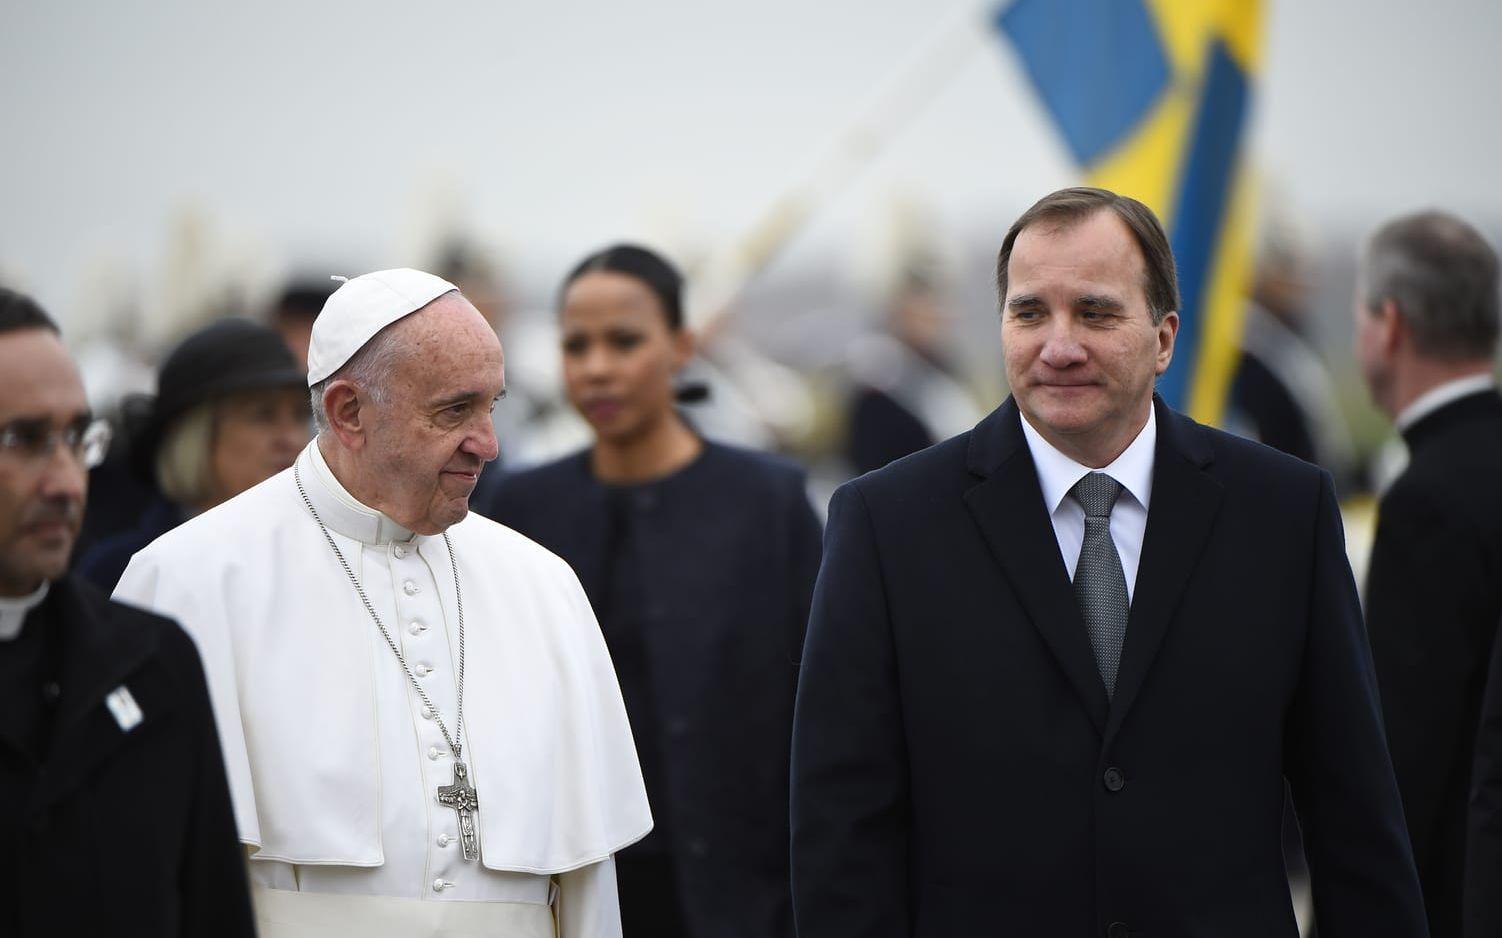 Påve Franciskus och statsminister Stefan Löfven. Bild: Emil Langvad